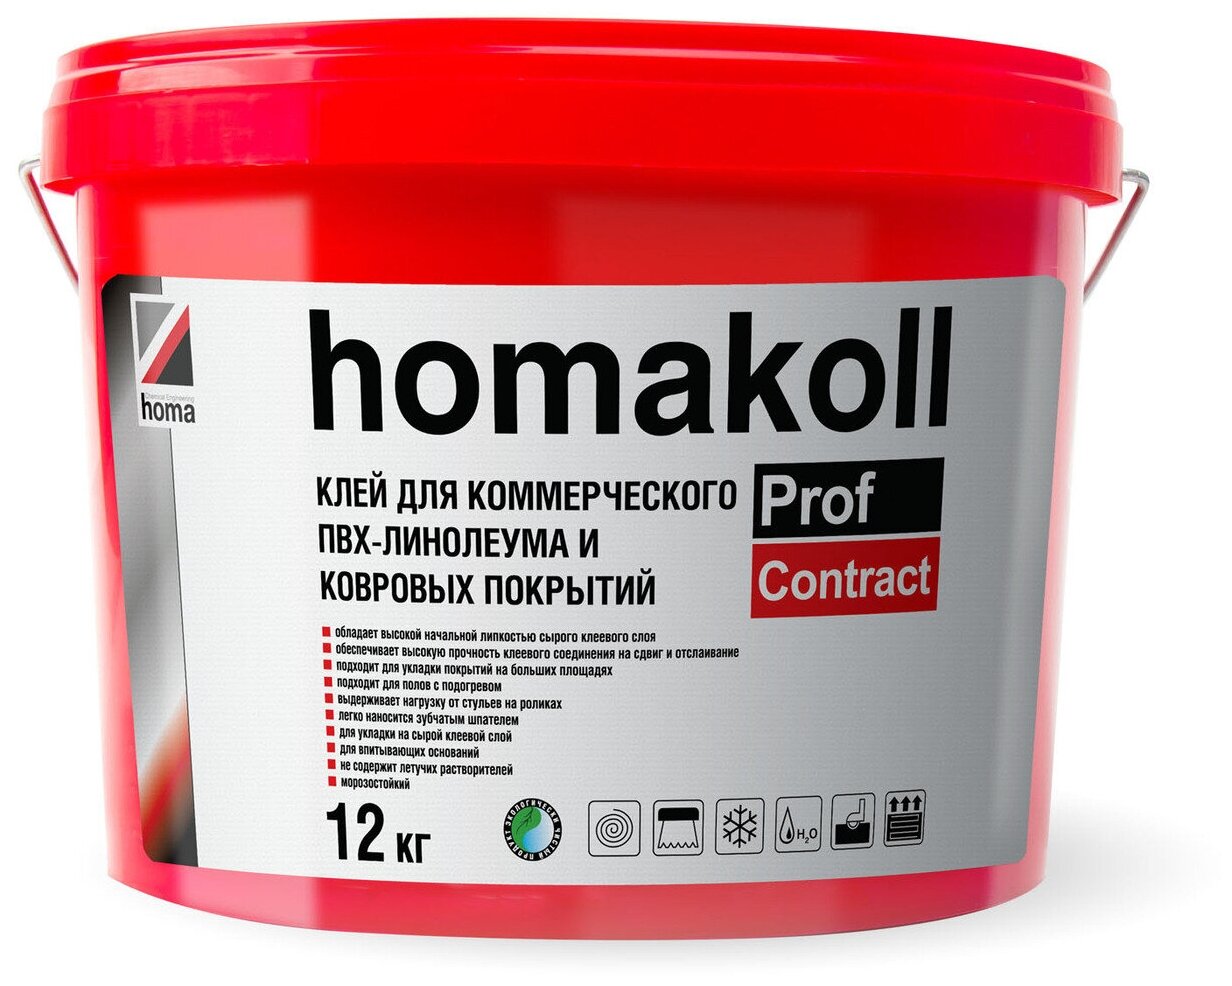 Клей Homakoll PROF CONTRACT для коммерческоко ПВХ линолеума, ковролина, 12 кг